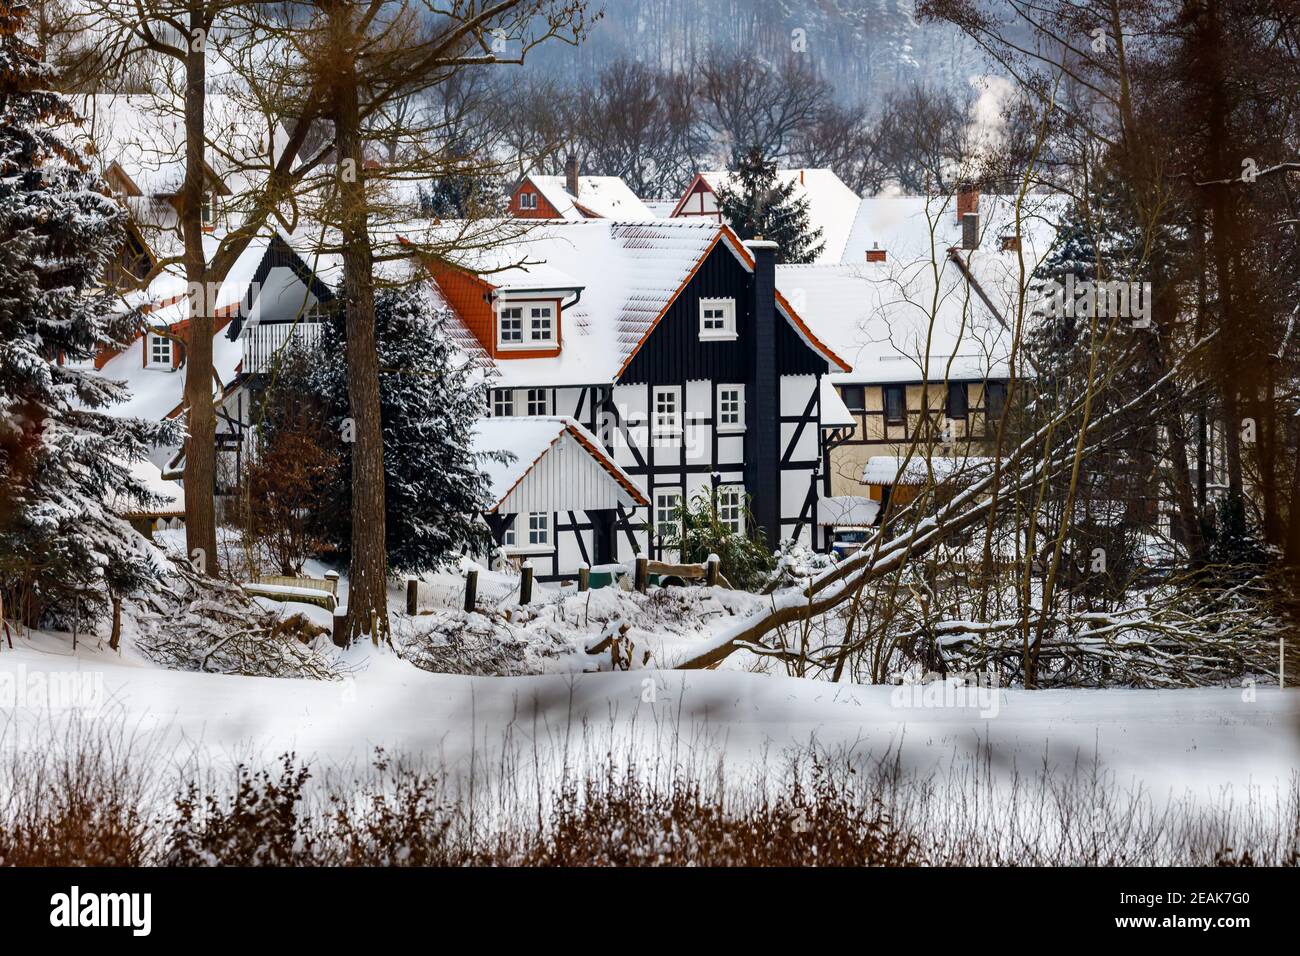 Half timbered houses of Herleshausen in Germany Stock Photo